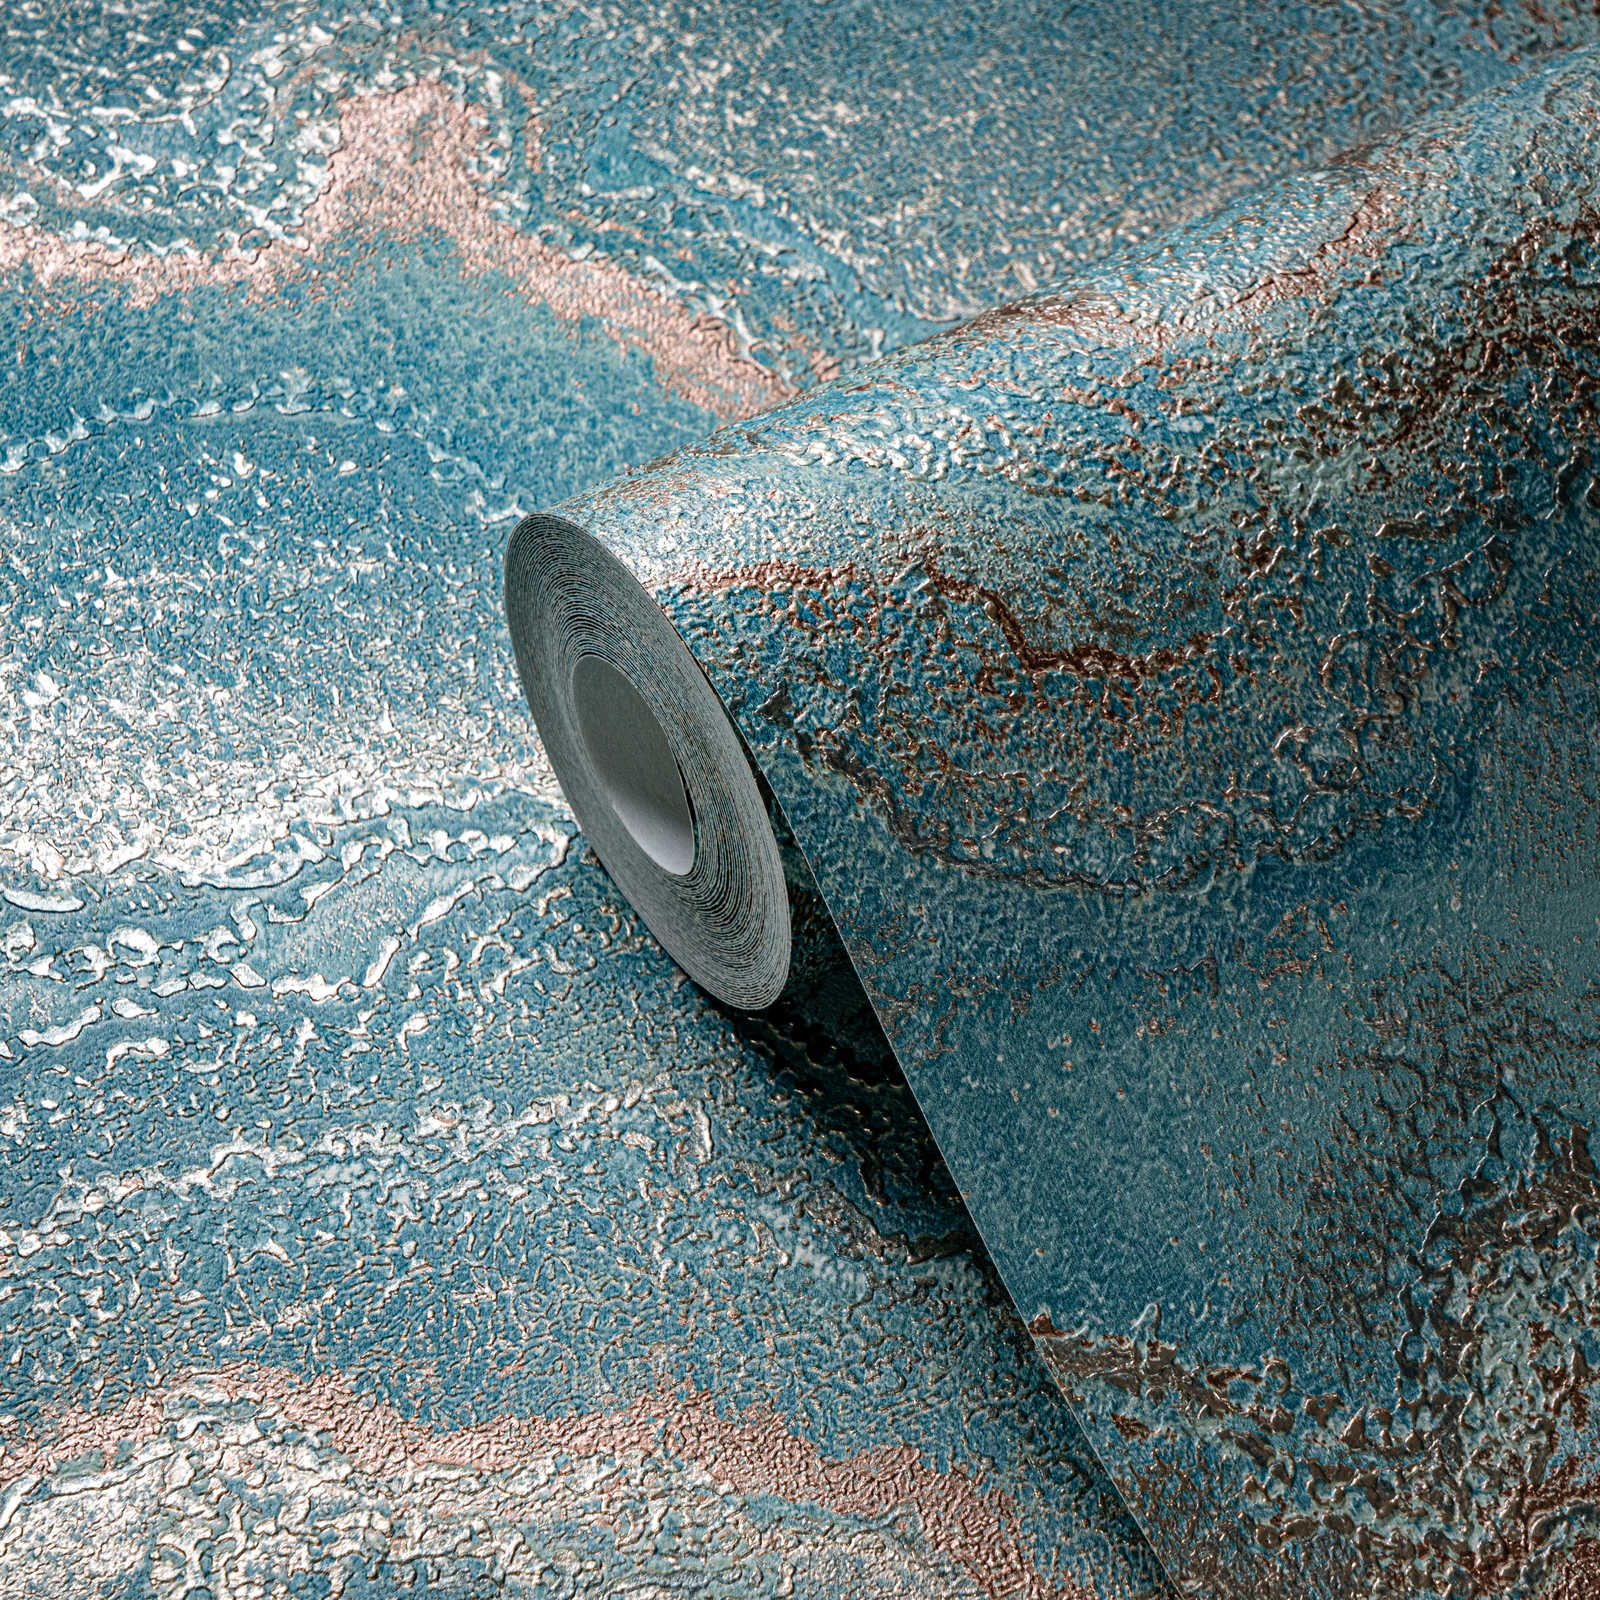             Papel pintado tejido-no tejido jaspeado con efecto metálico - azul, turquesa, dorado
        